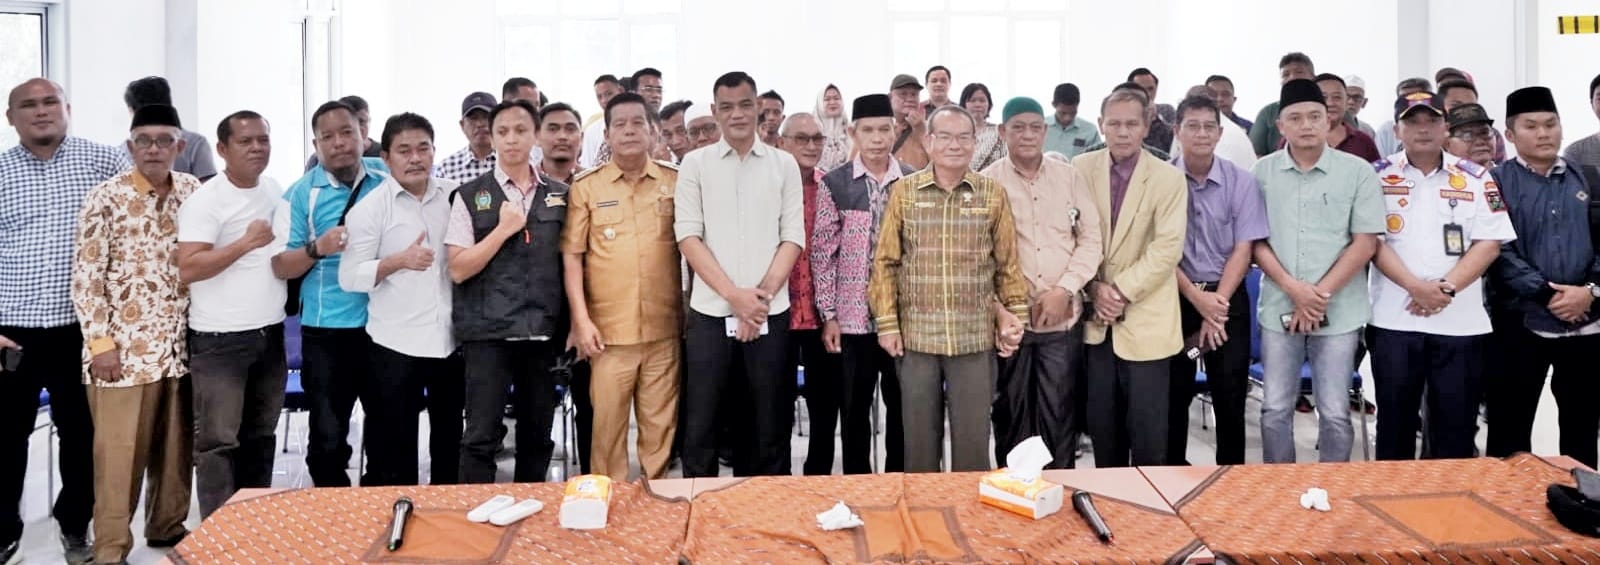 Bupati Simalungun Radiapoh H Sinaga dan para tokoh masyarakat foto bersama usai mengadakan pertemuan, Kamis (14/3).(Waspada/ist)